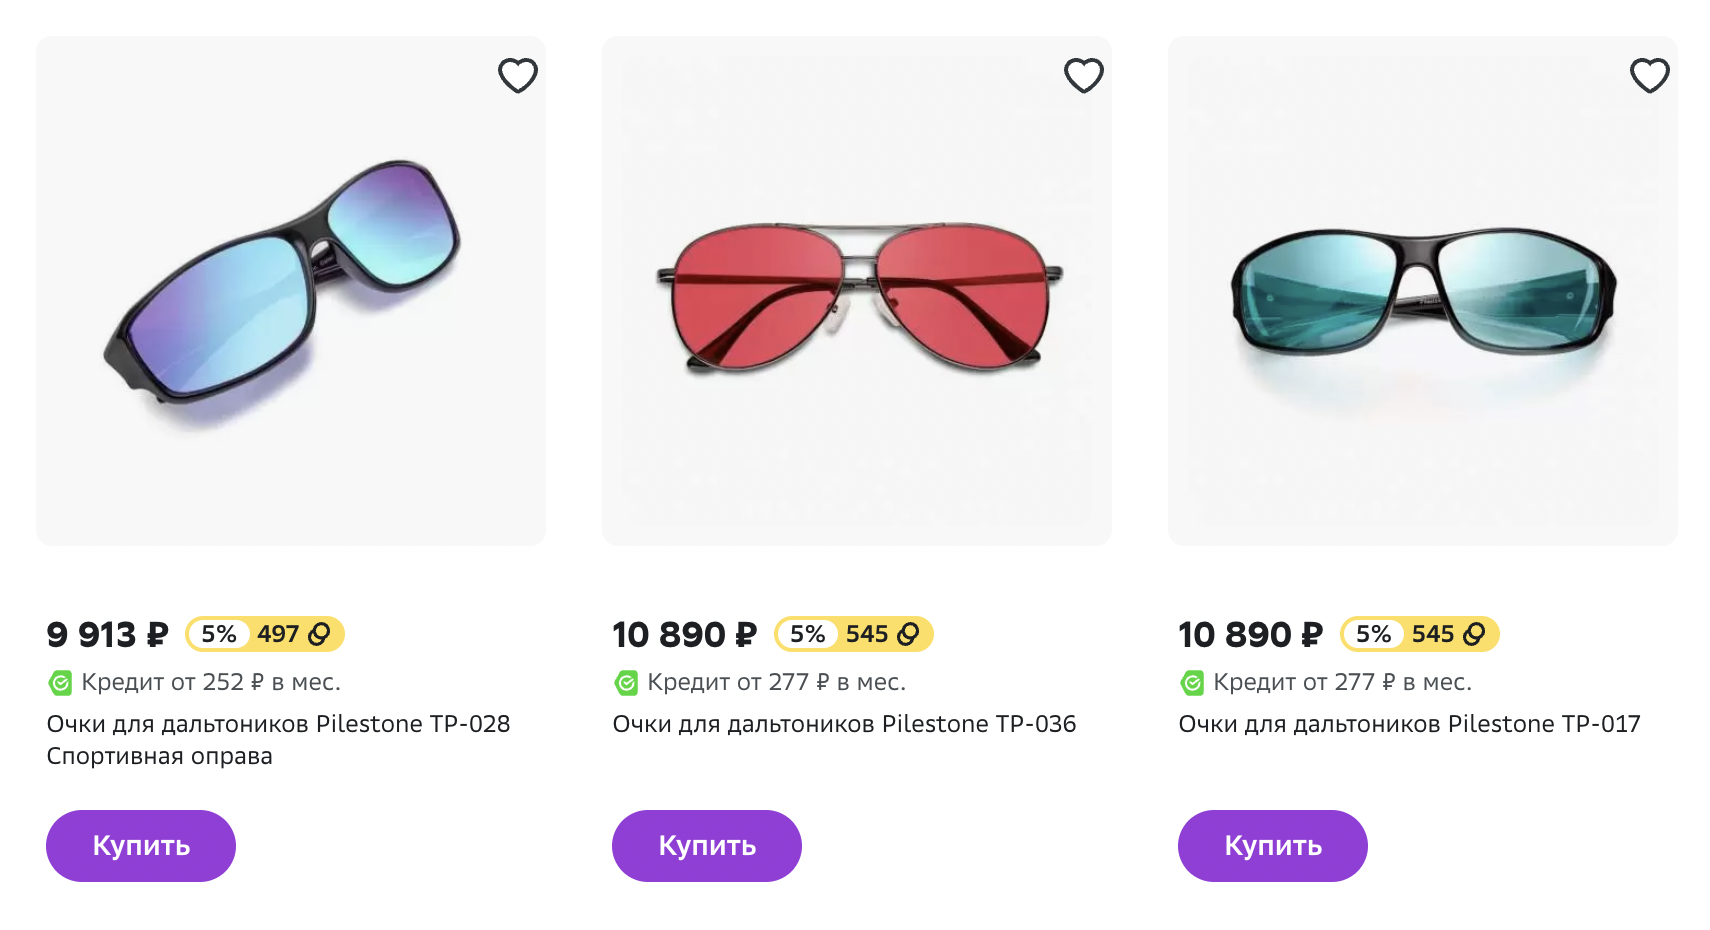 Очки для дальтоников стоят дорого, но в большинстве случаев не помогут скорректировать цветовое зрение. Источник: sbermegamarket.ru